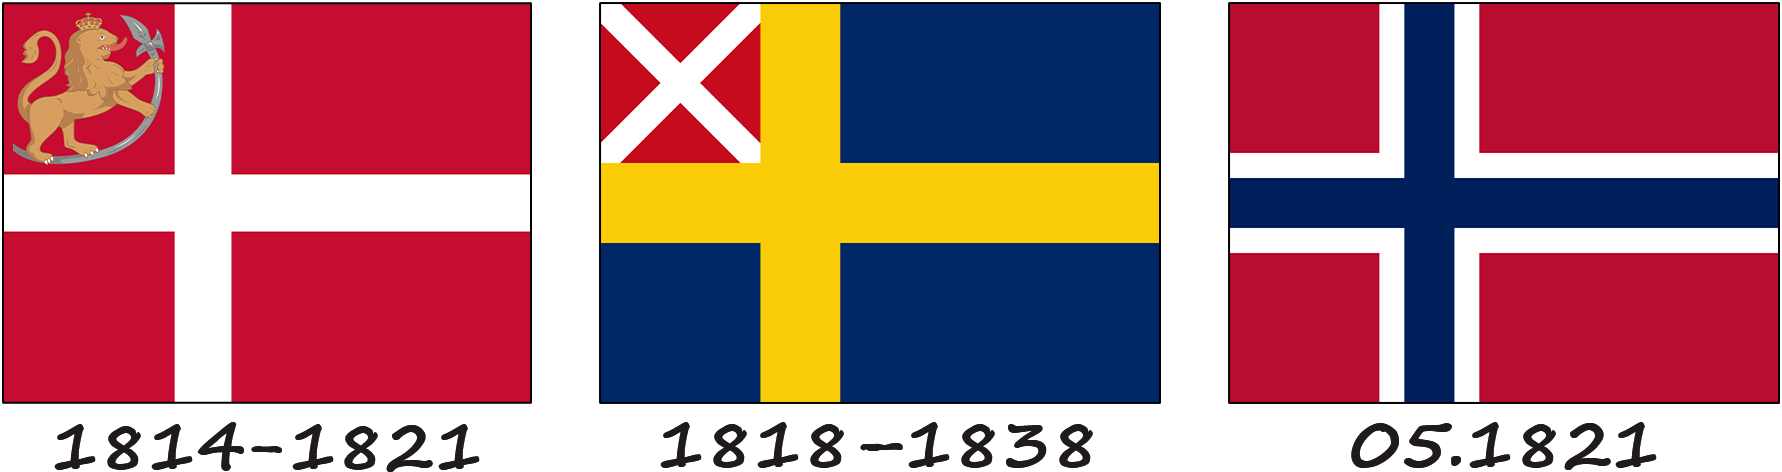 L'histoire du drapeau norvégien